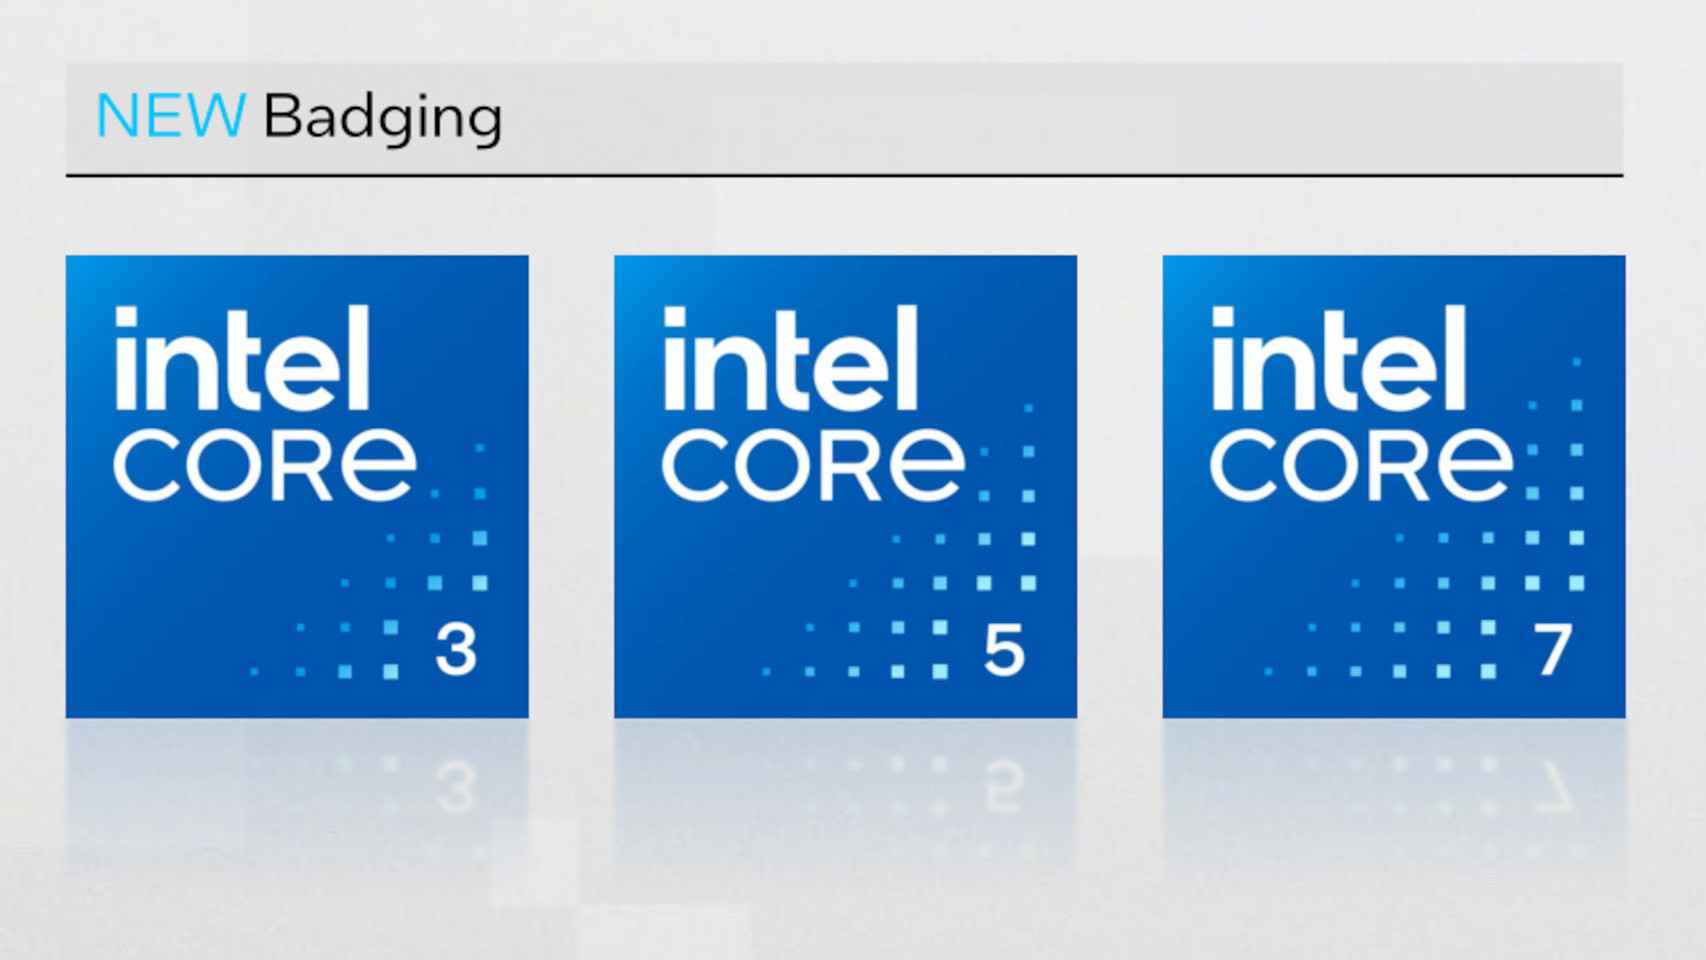 La nueva gama de procesadores Intel Core